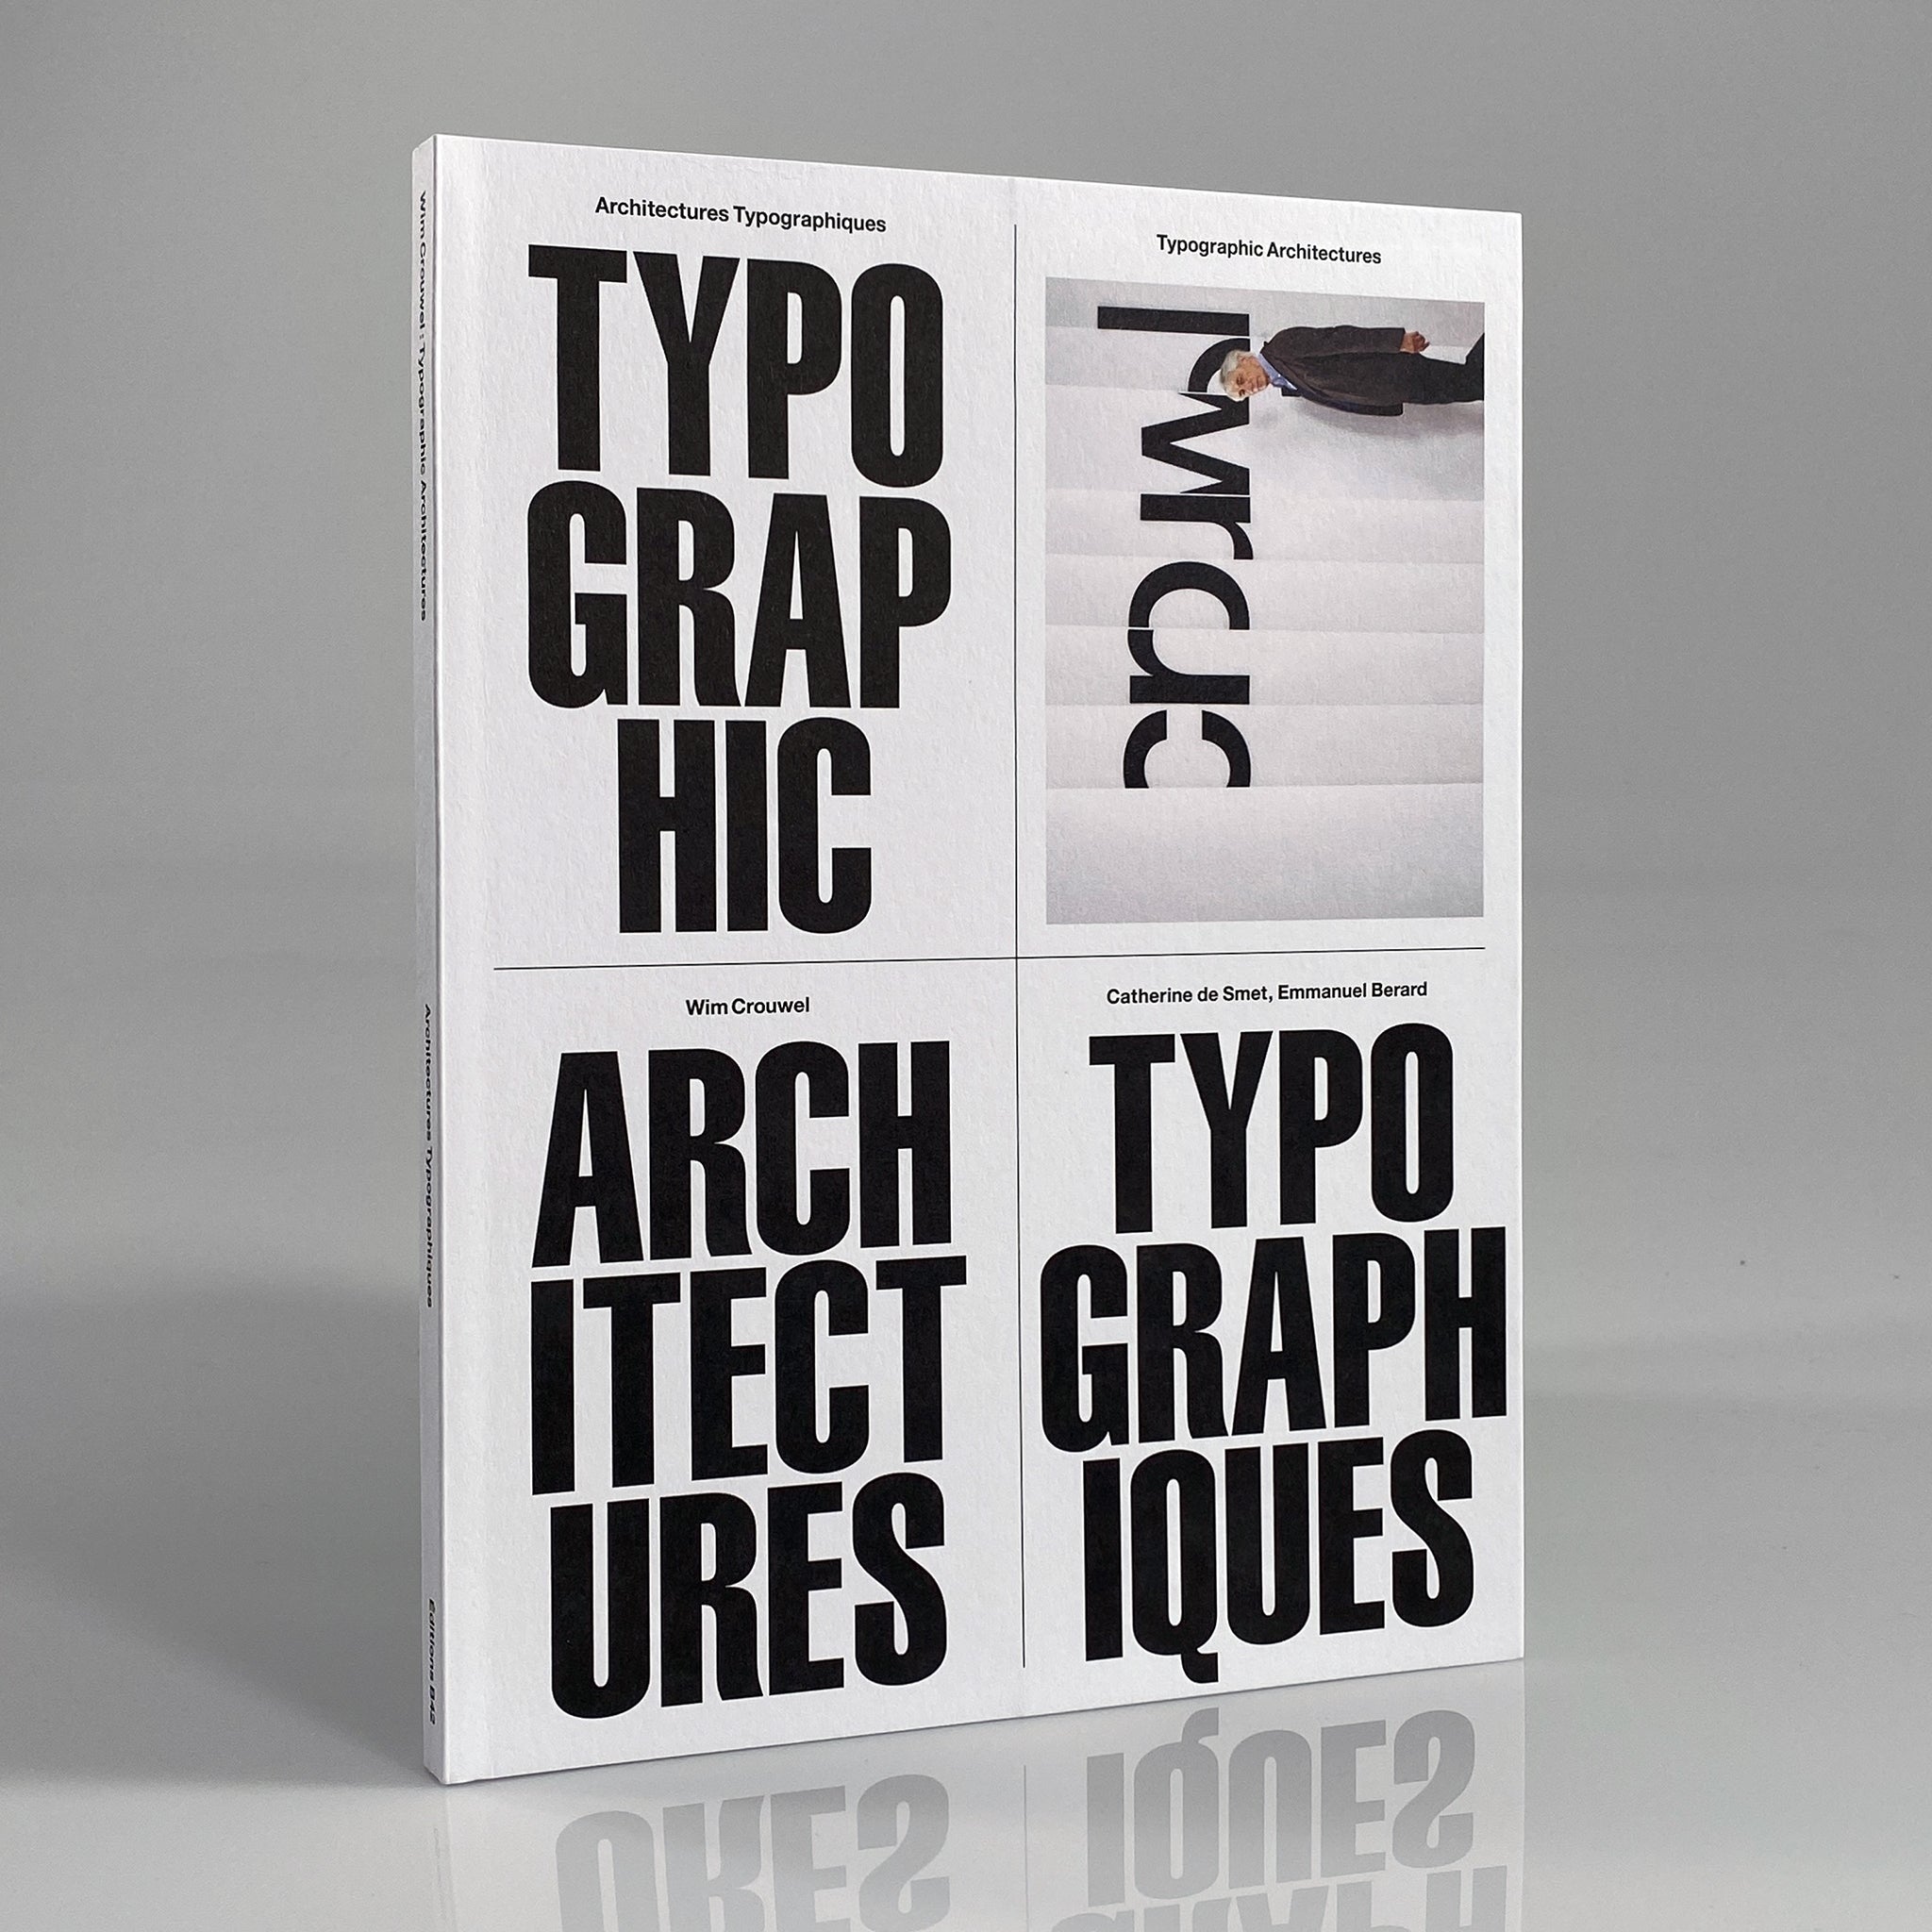 Typographic Architectures